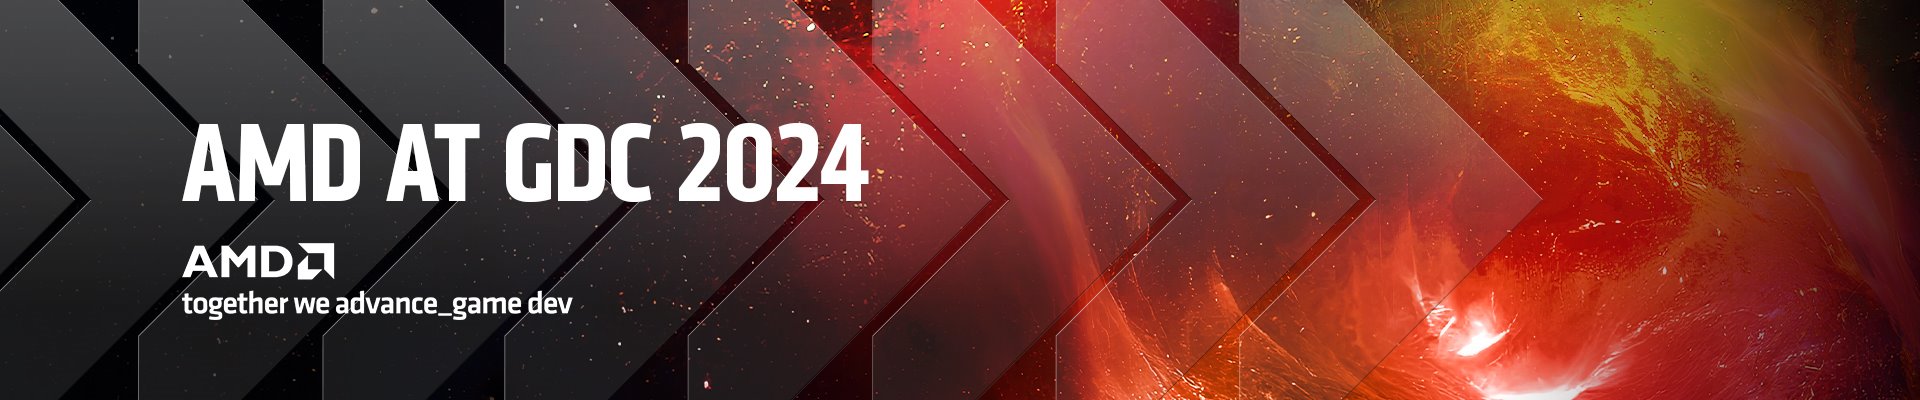 AMD在GDC 2024